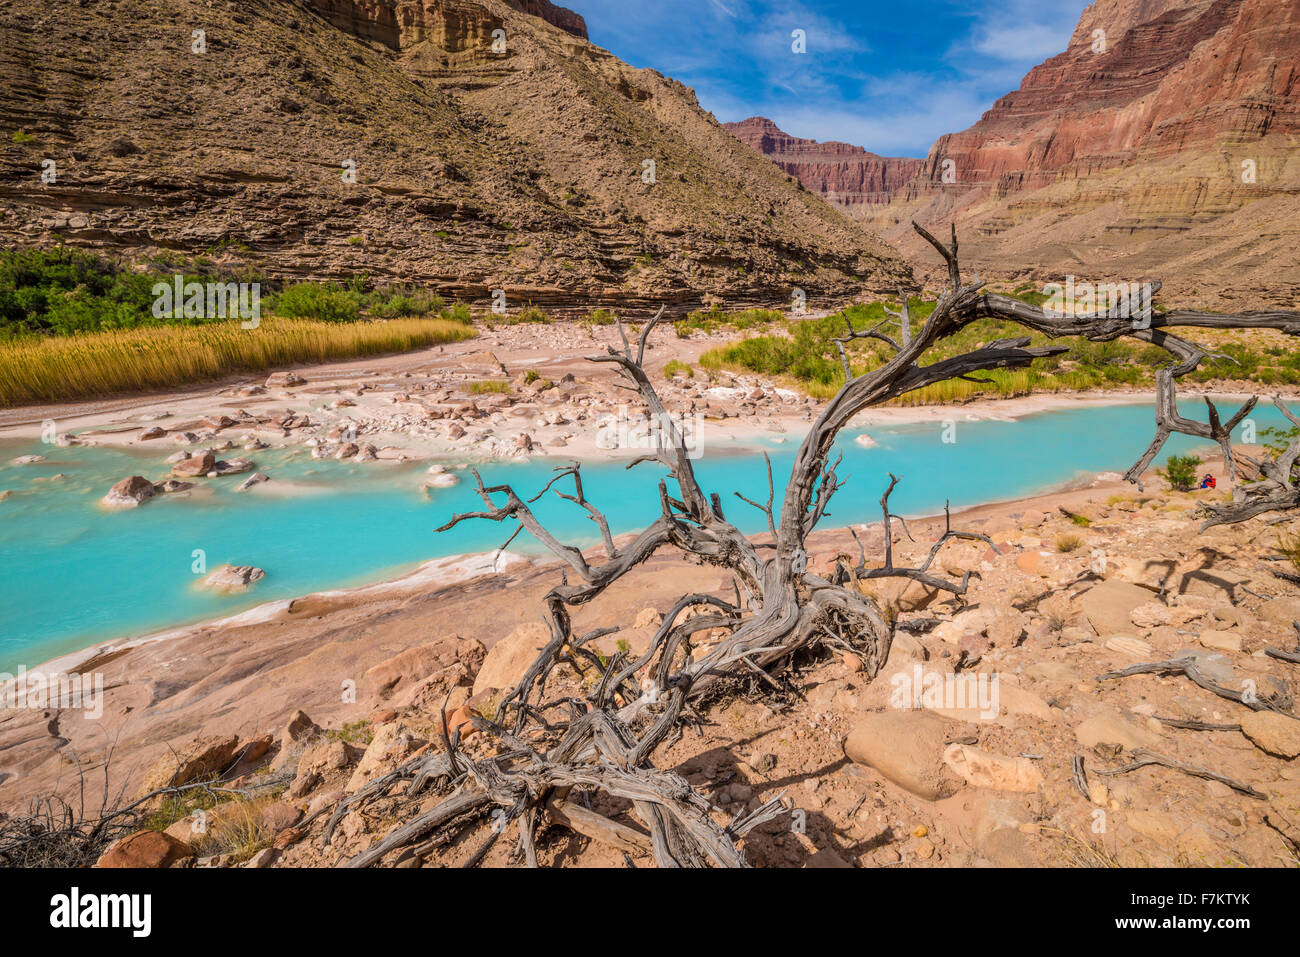 Acque blu del piccolo fiume Colorado nel Parco Nazionale del Grand Canyon, Arizona, nei pressi del Fiume Colorado, colore blu dal carbonio calciem Foto Stock